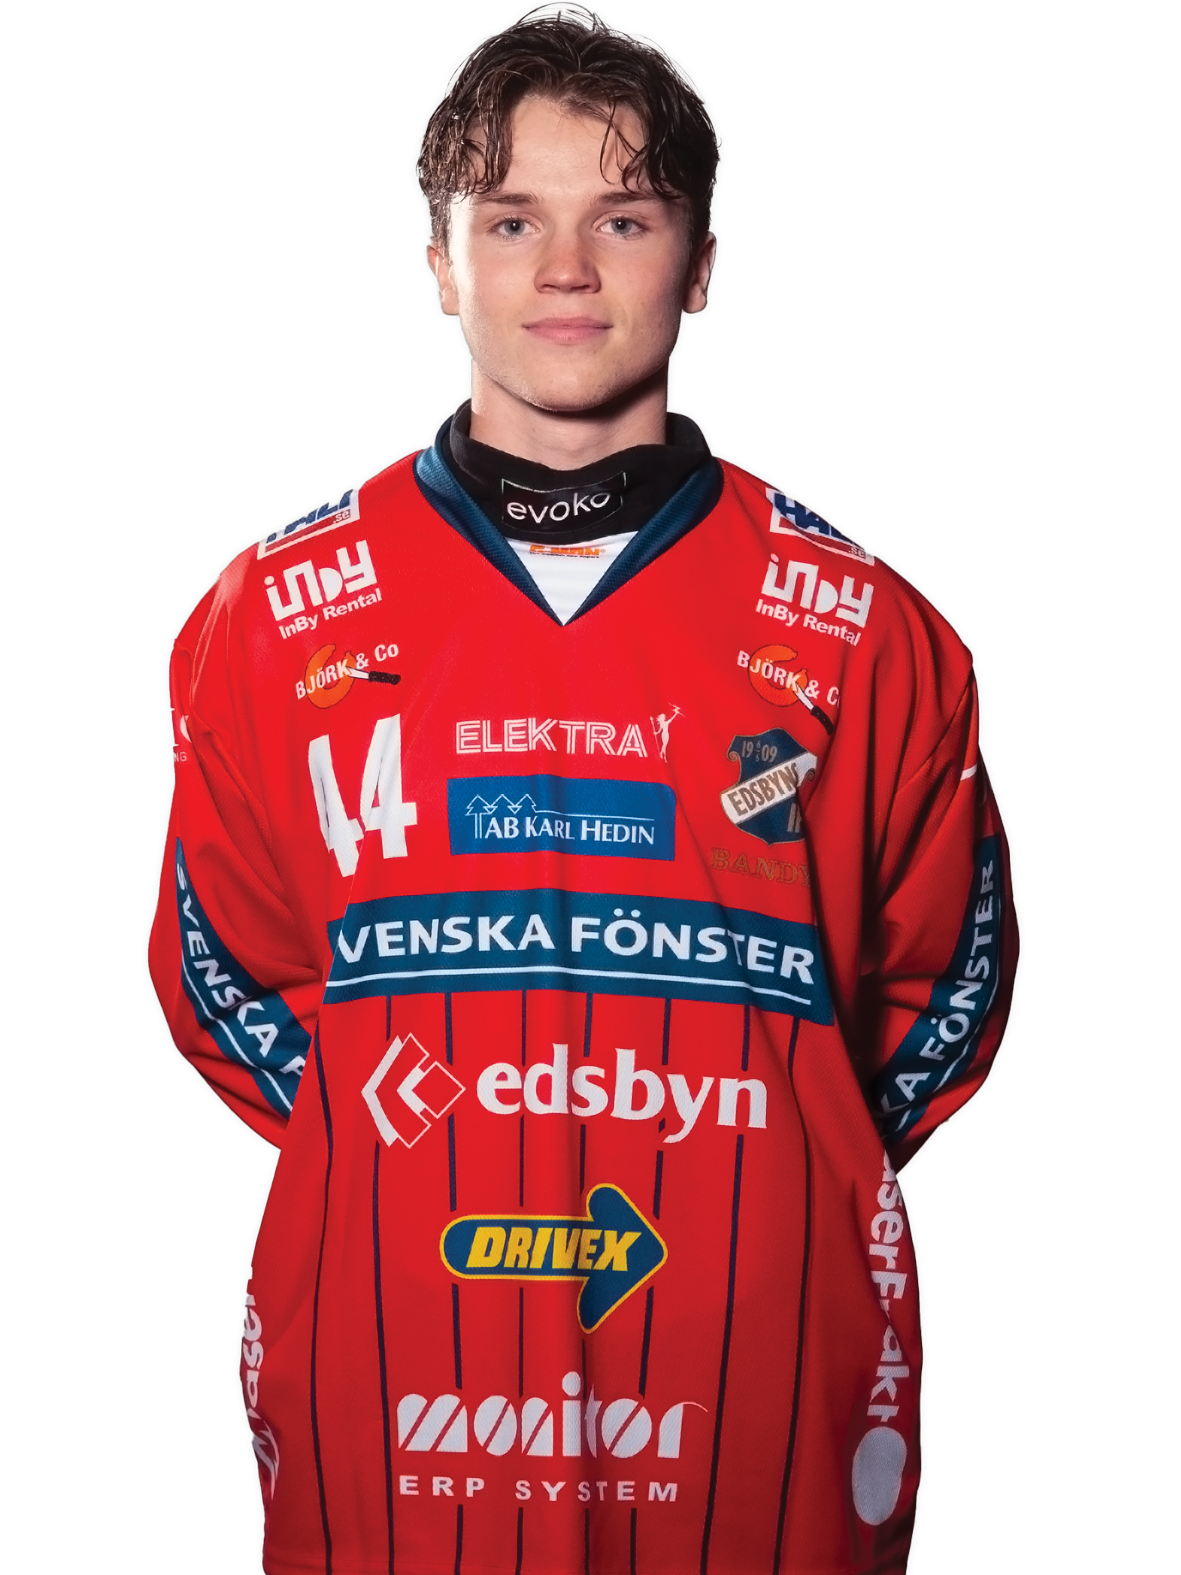 14 Granqvist